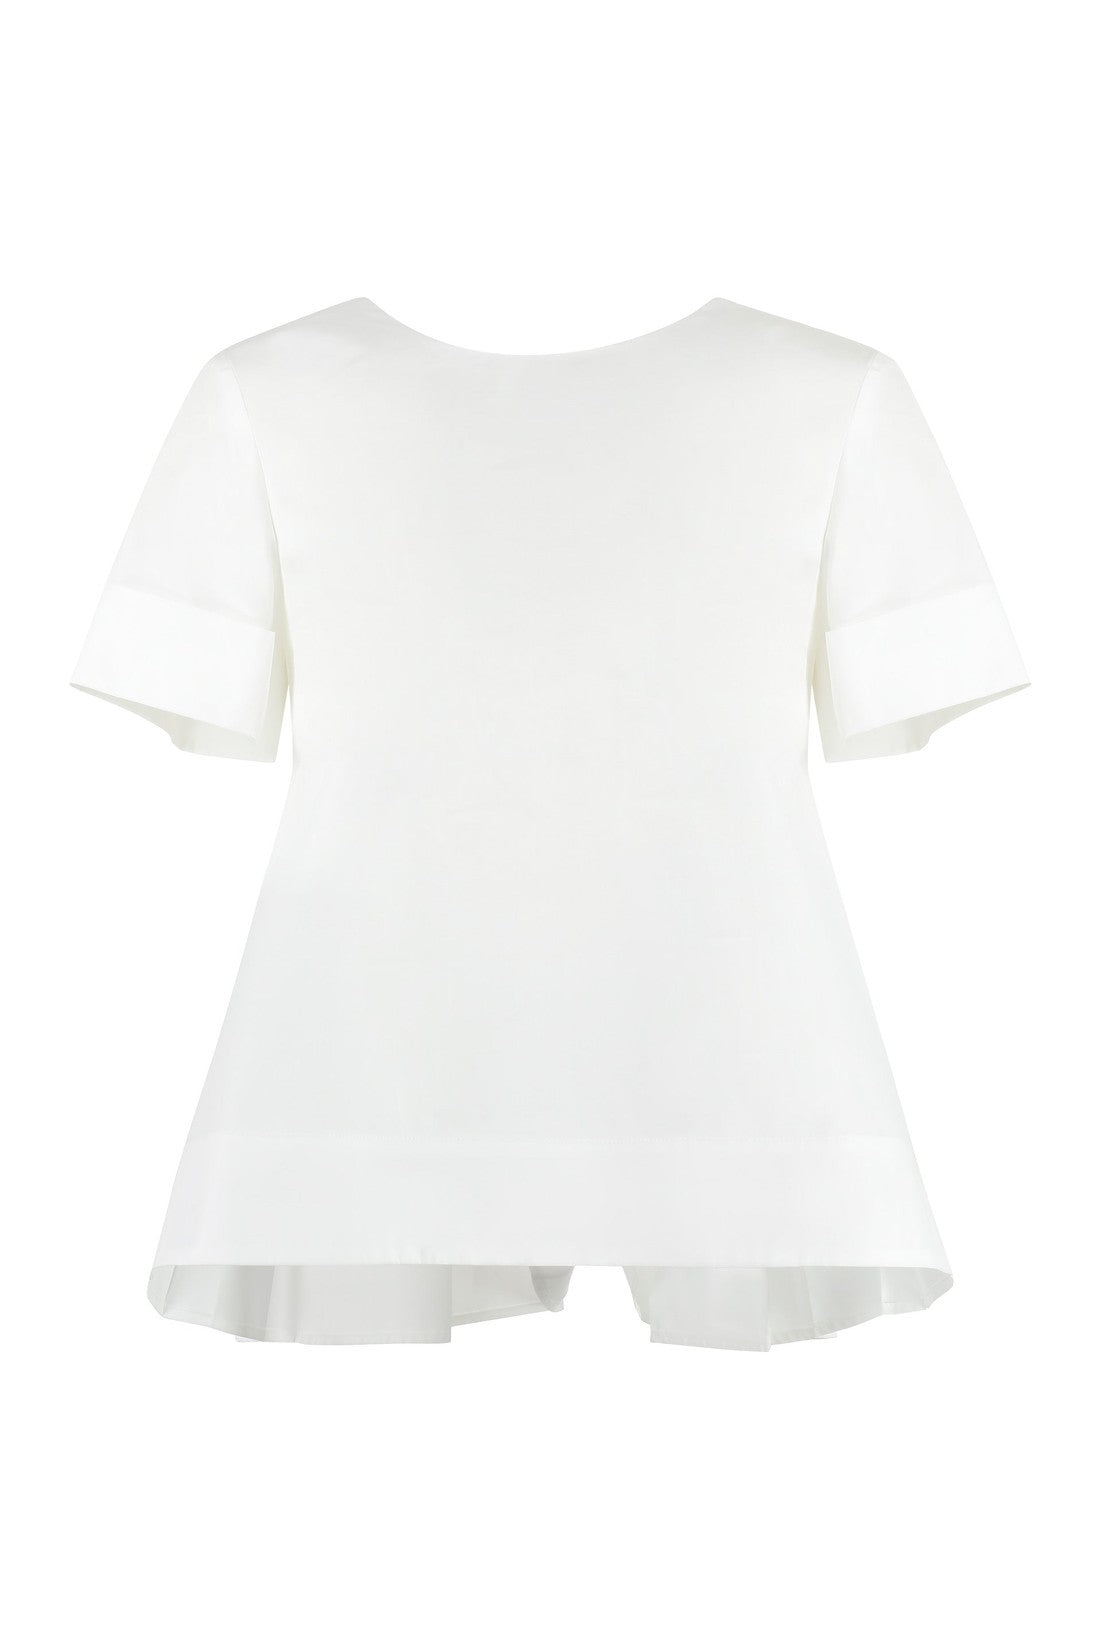 Piralo-OUTLET-SALE-Cotton blouse-ARCHIVIST